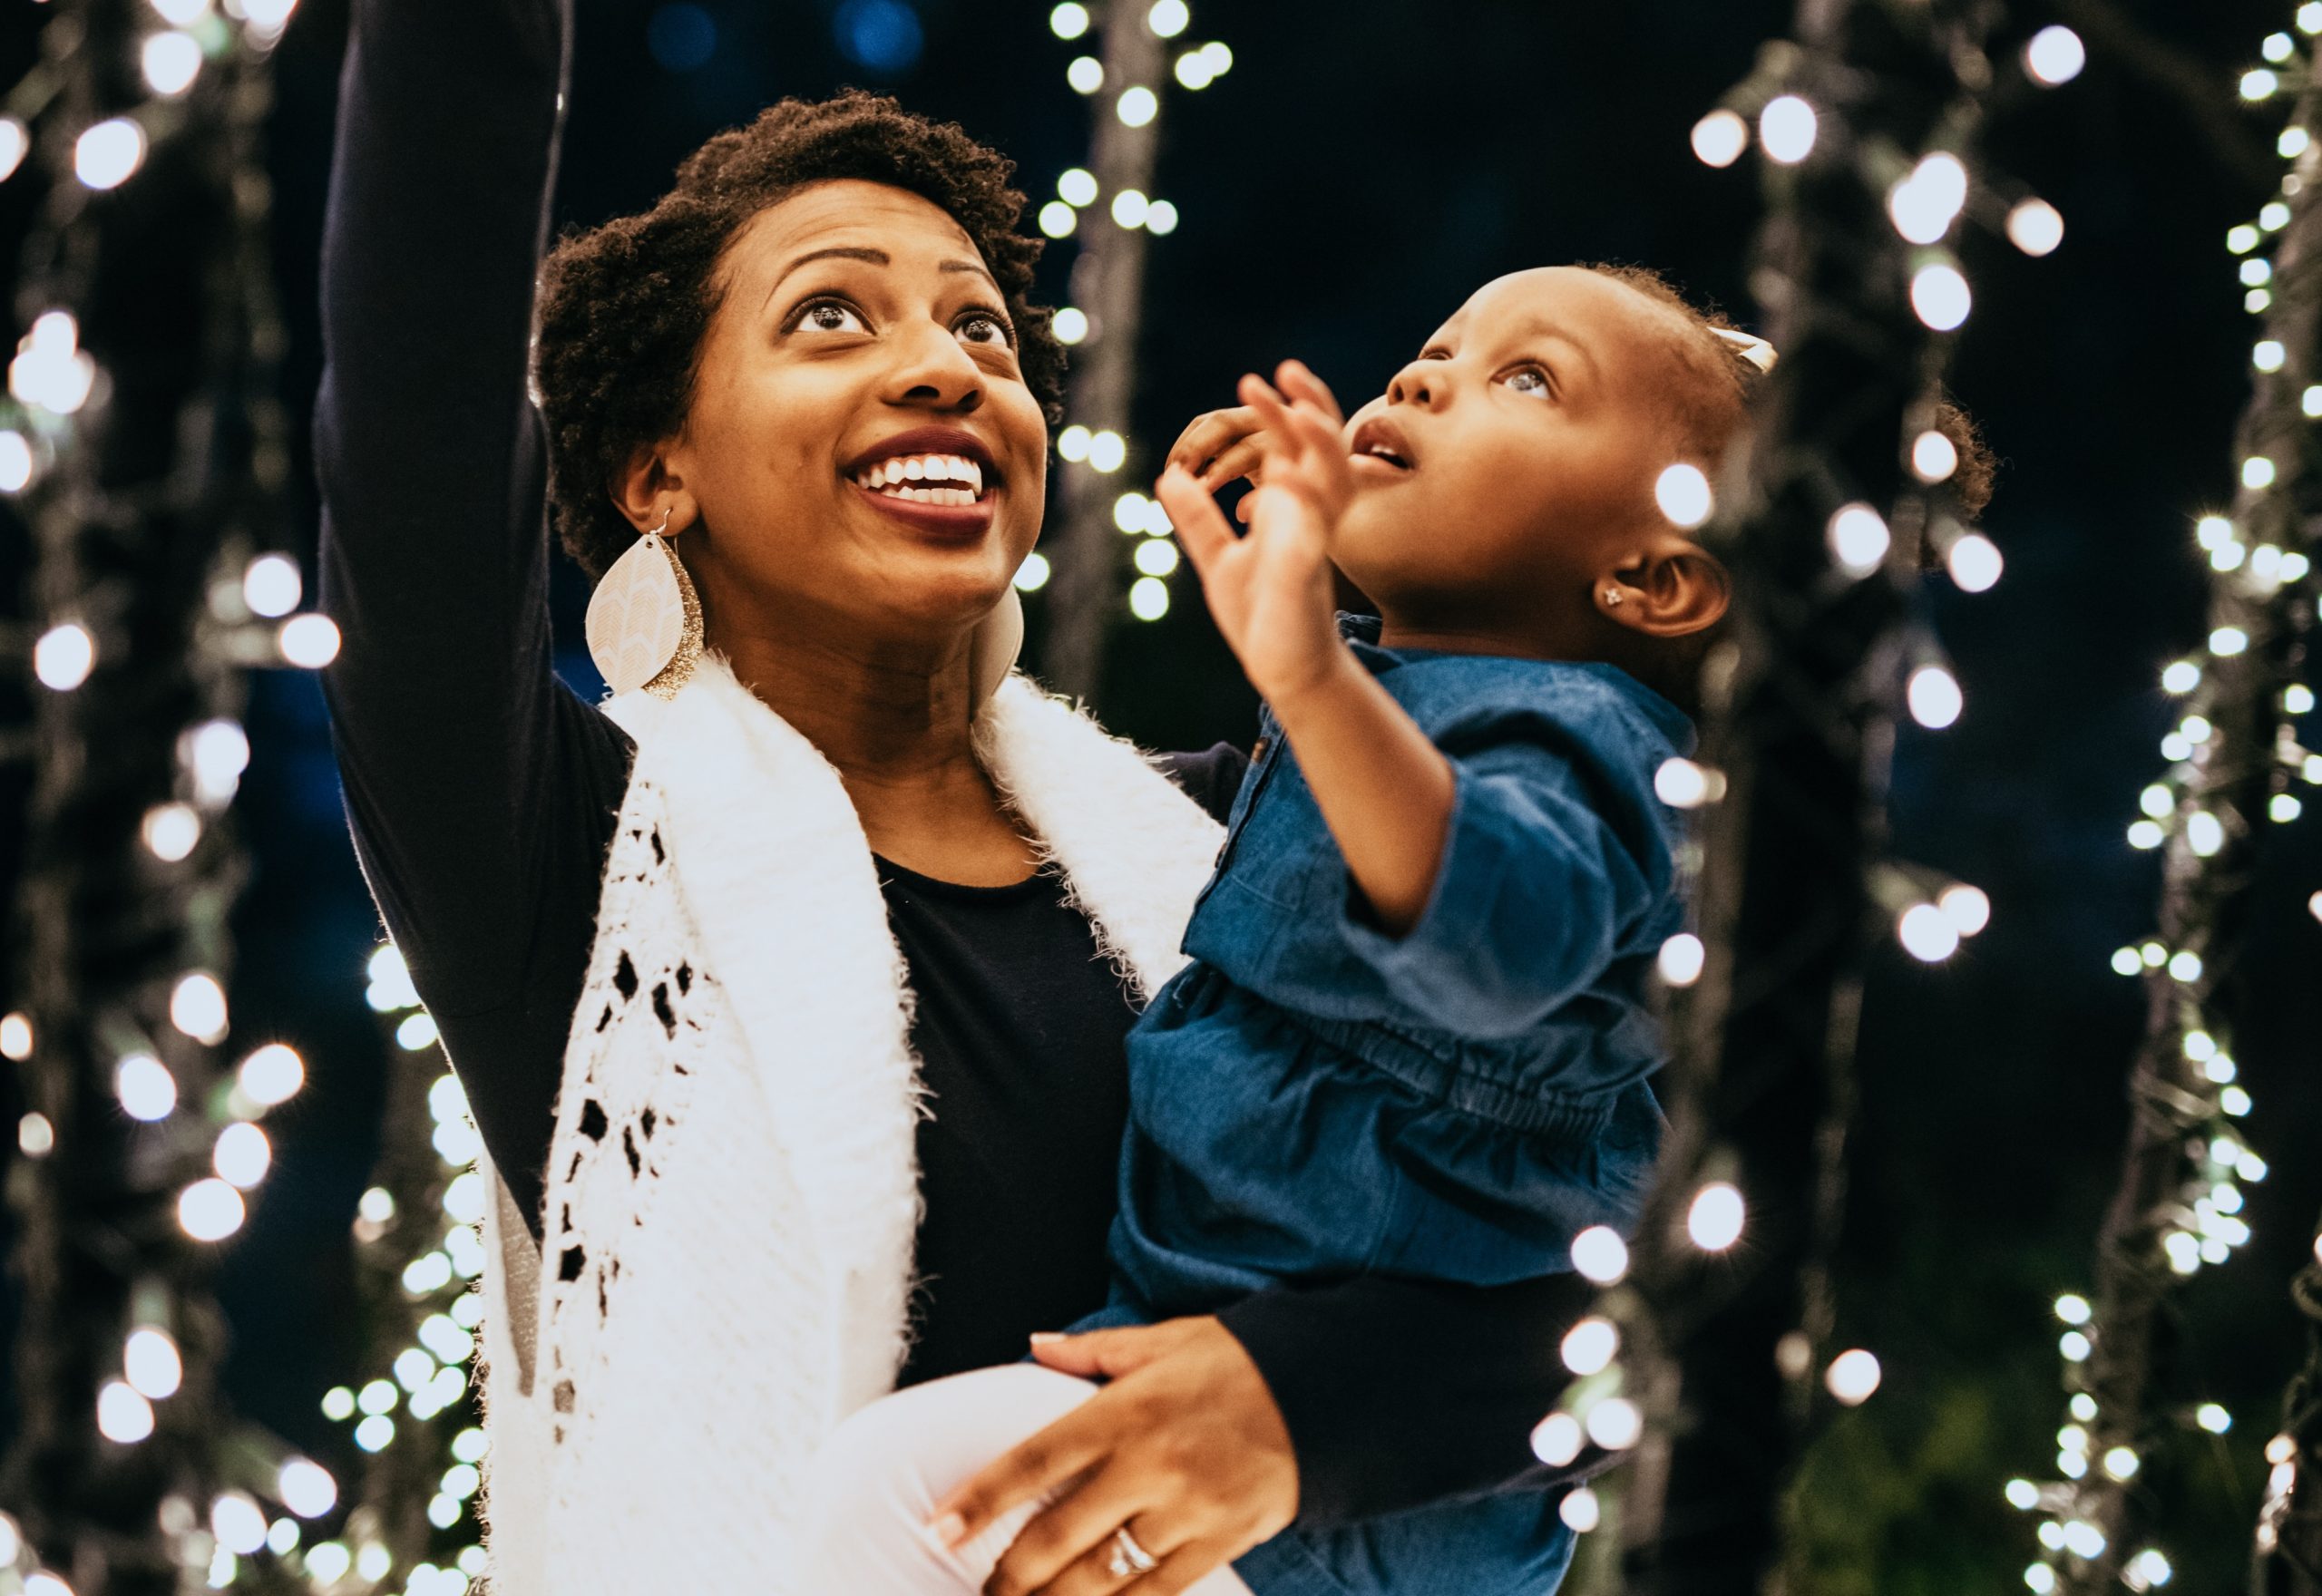 Family Fun Light Up the Holiday Season at Nashville Zoo’s